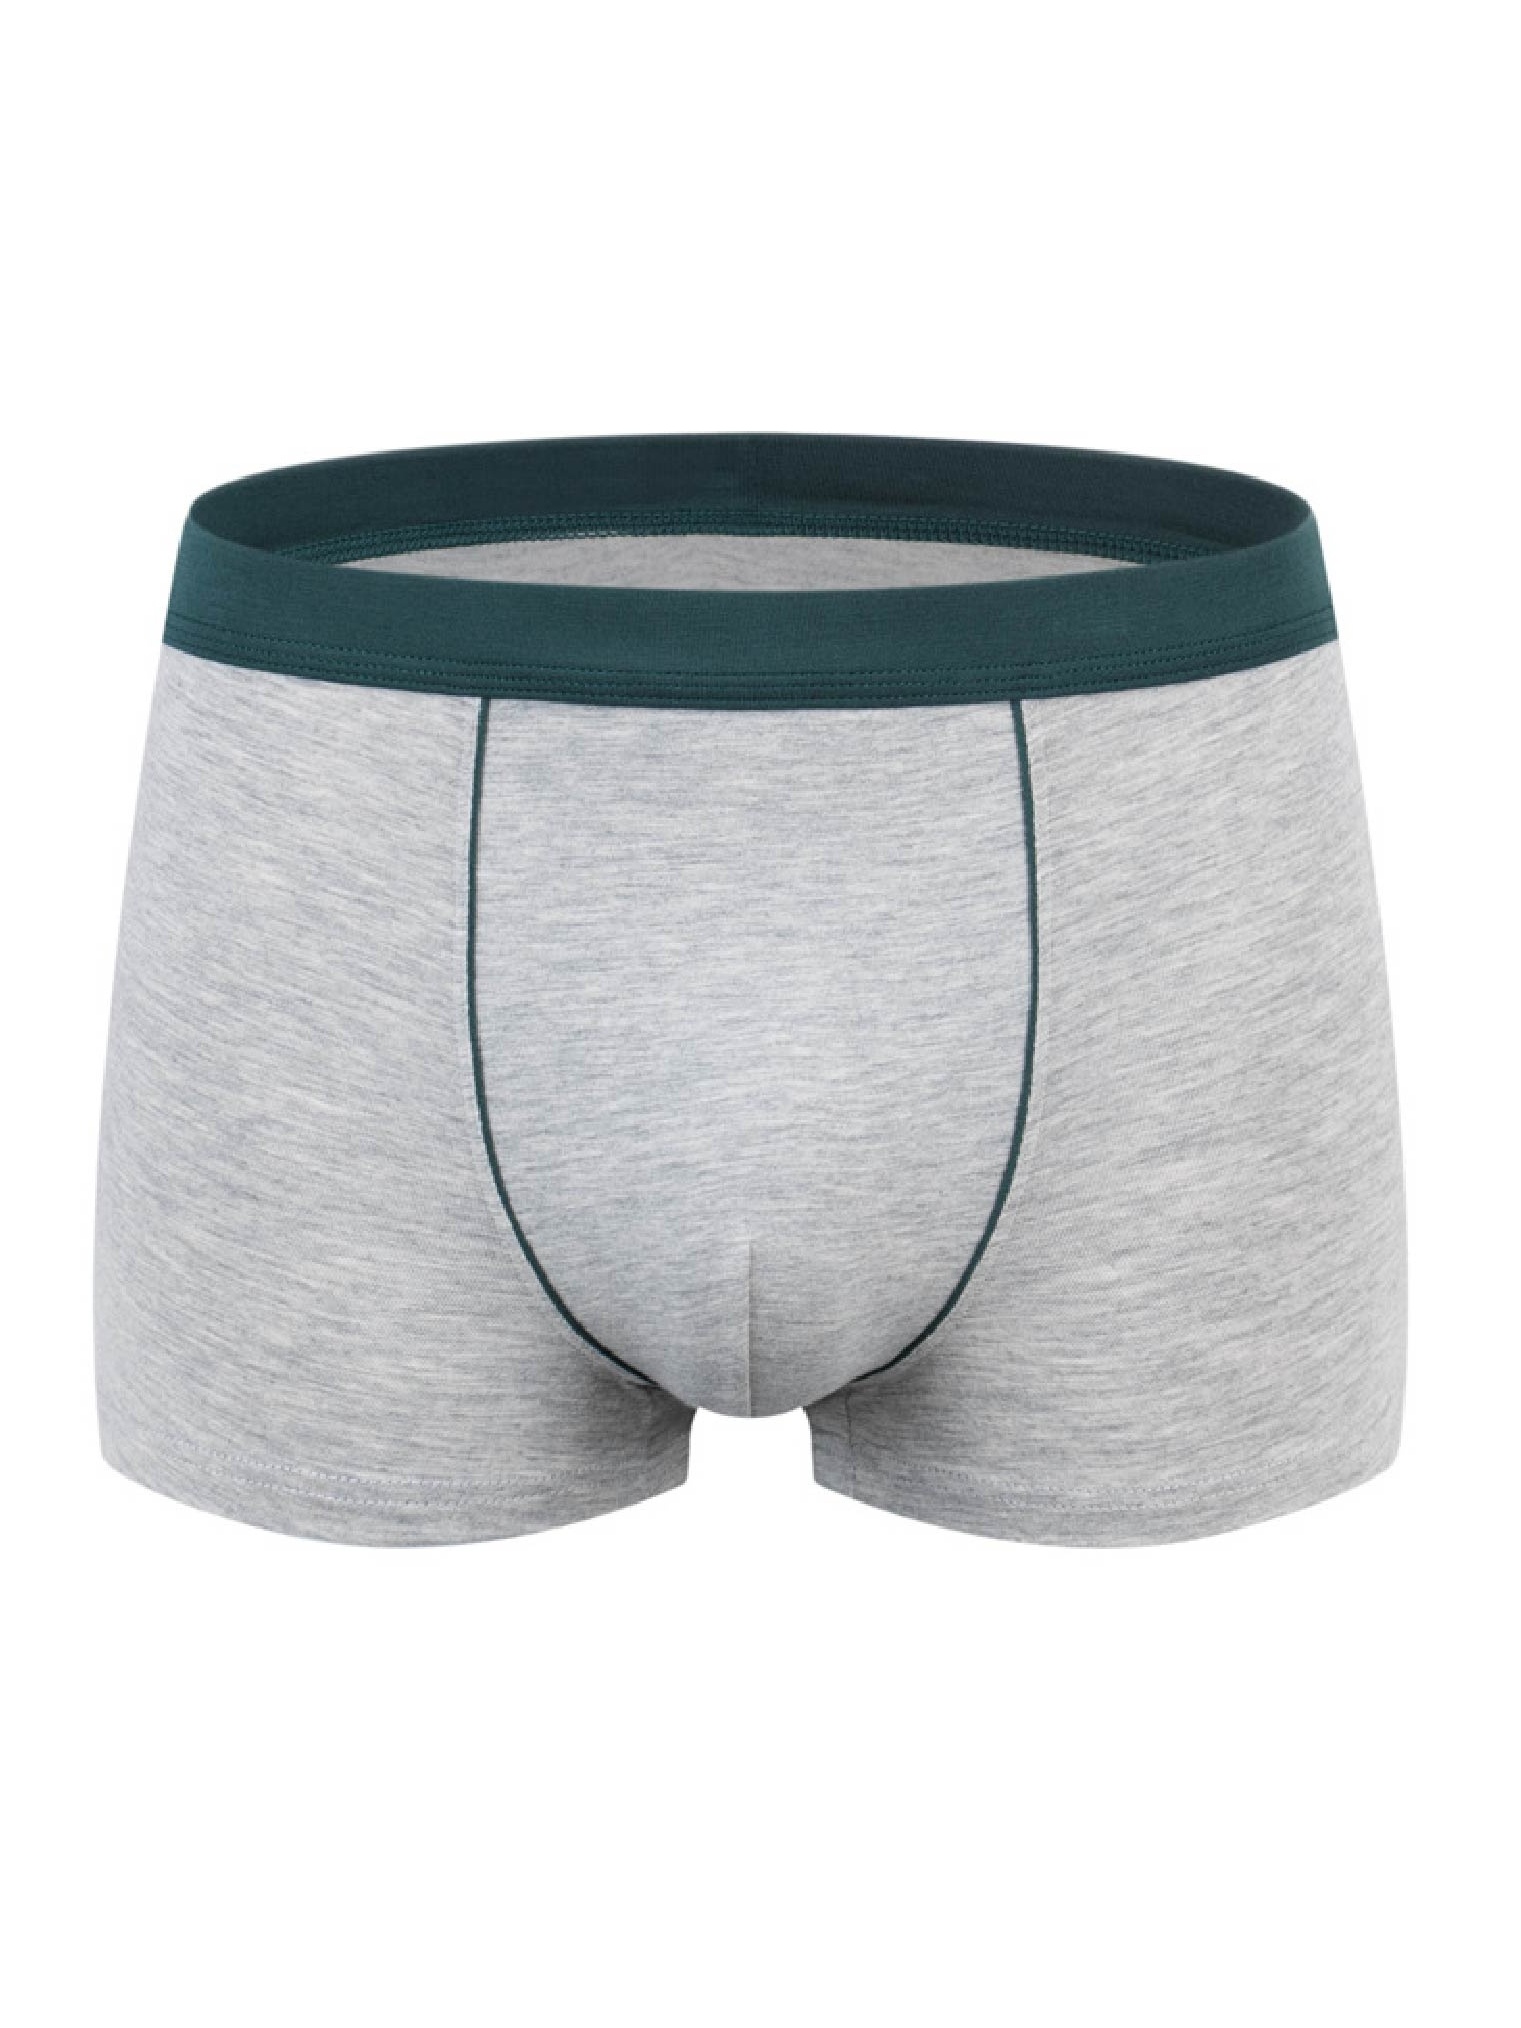 10 Pieces Men Boxers Shorts Underpants Underwear 2XL 3XL 4XL 10